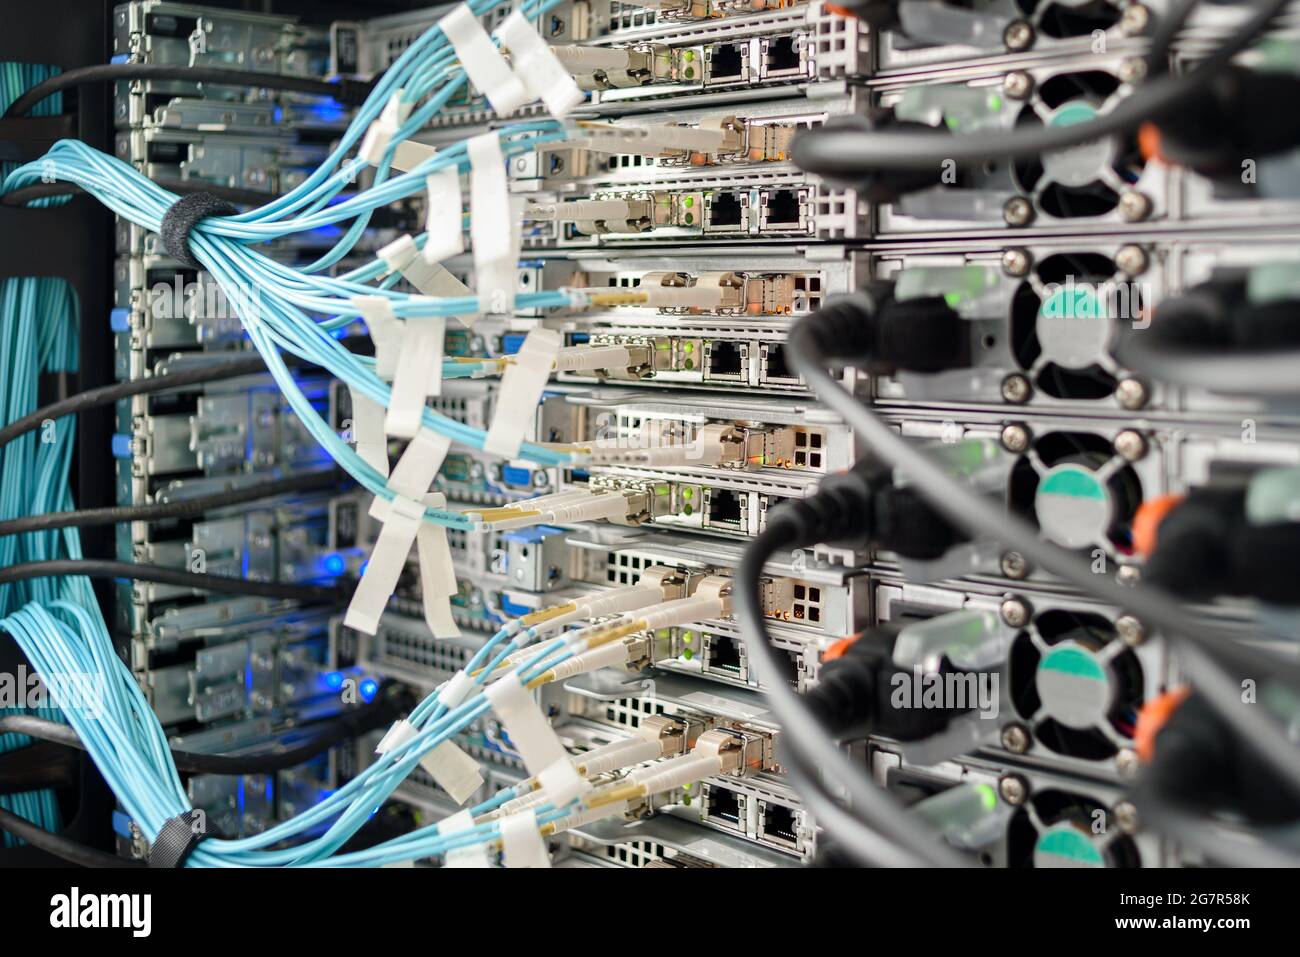 Servidores, switches o routers en funcionamiento en el centro de datos con una gran cantidad de lámparas y cables LED Foto de stock